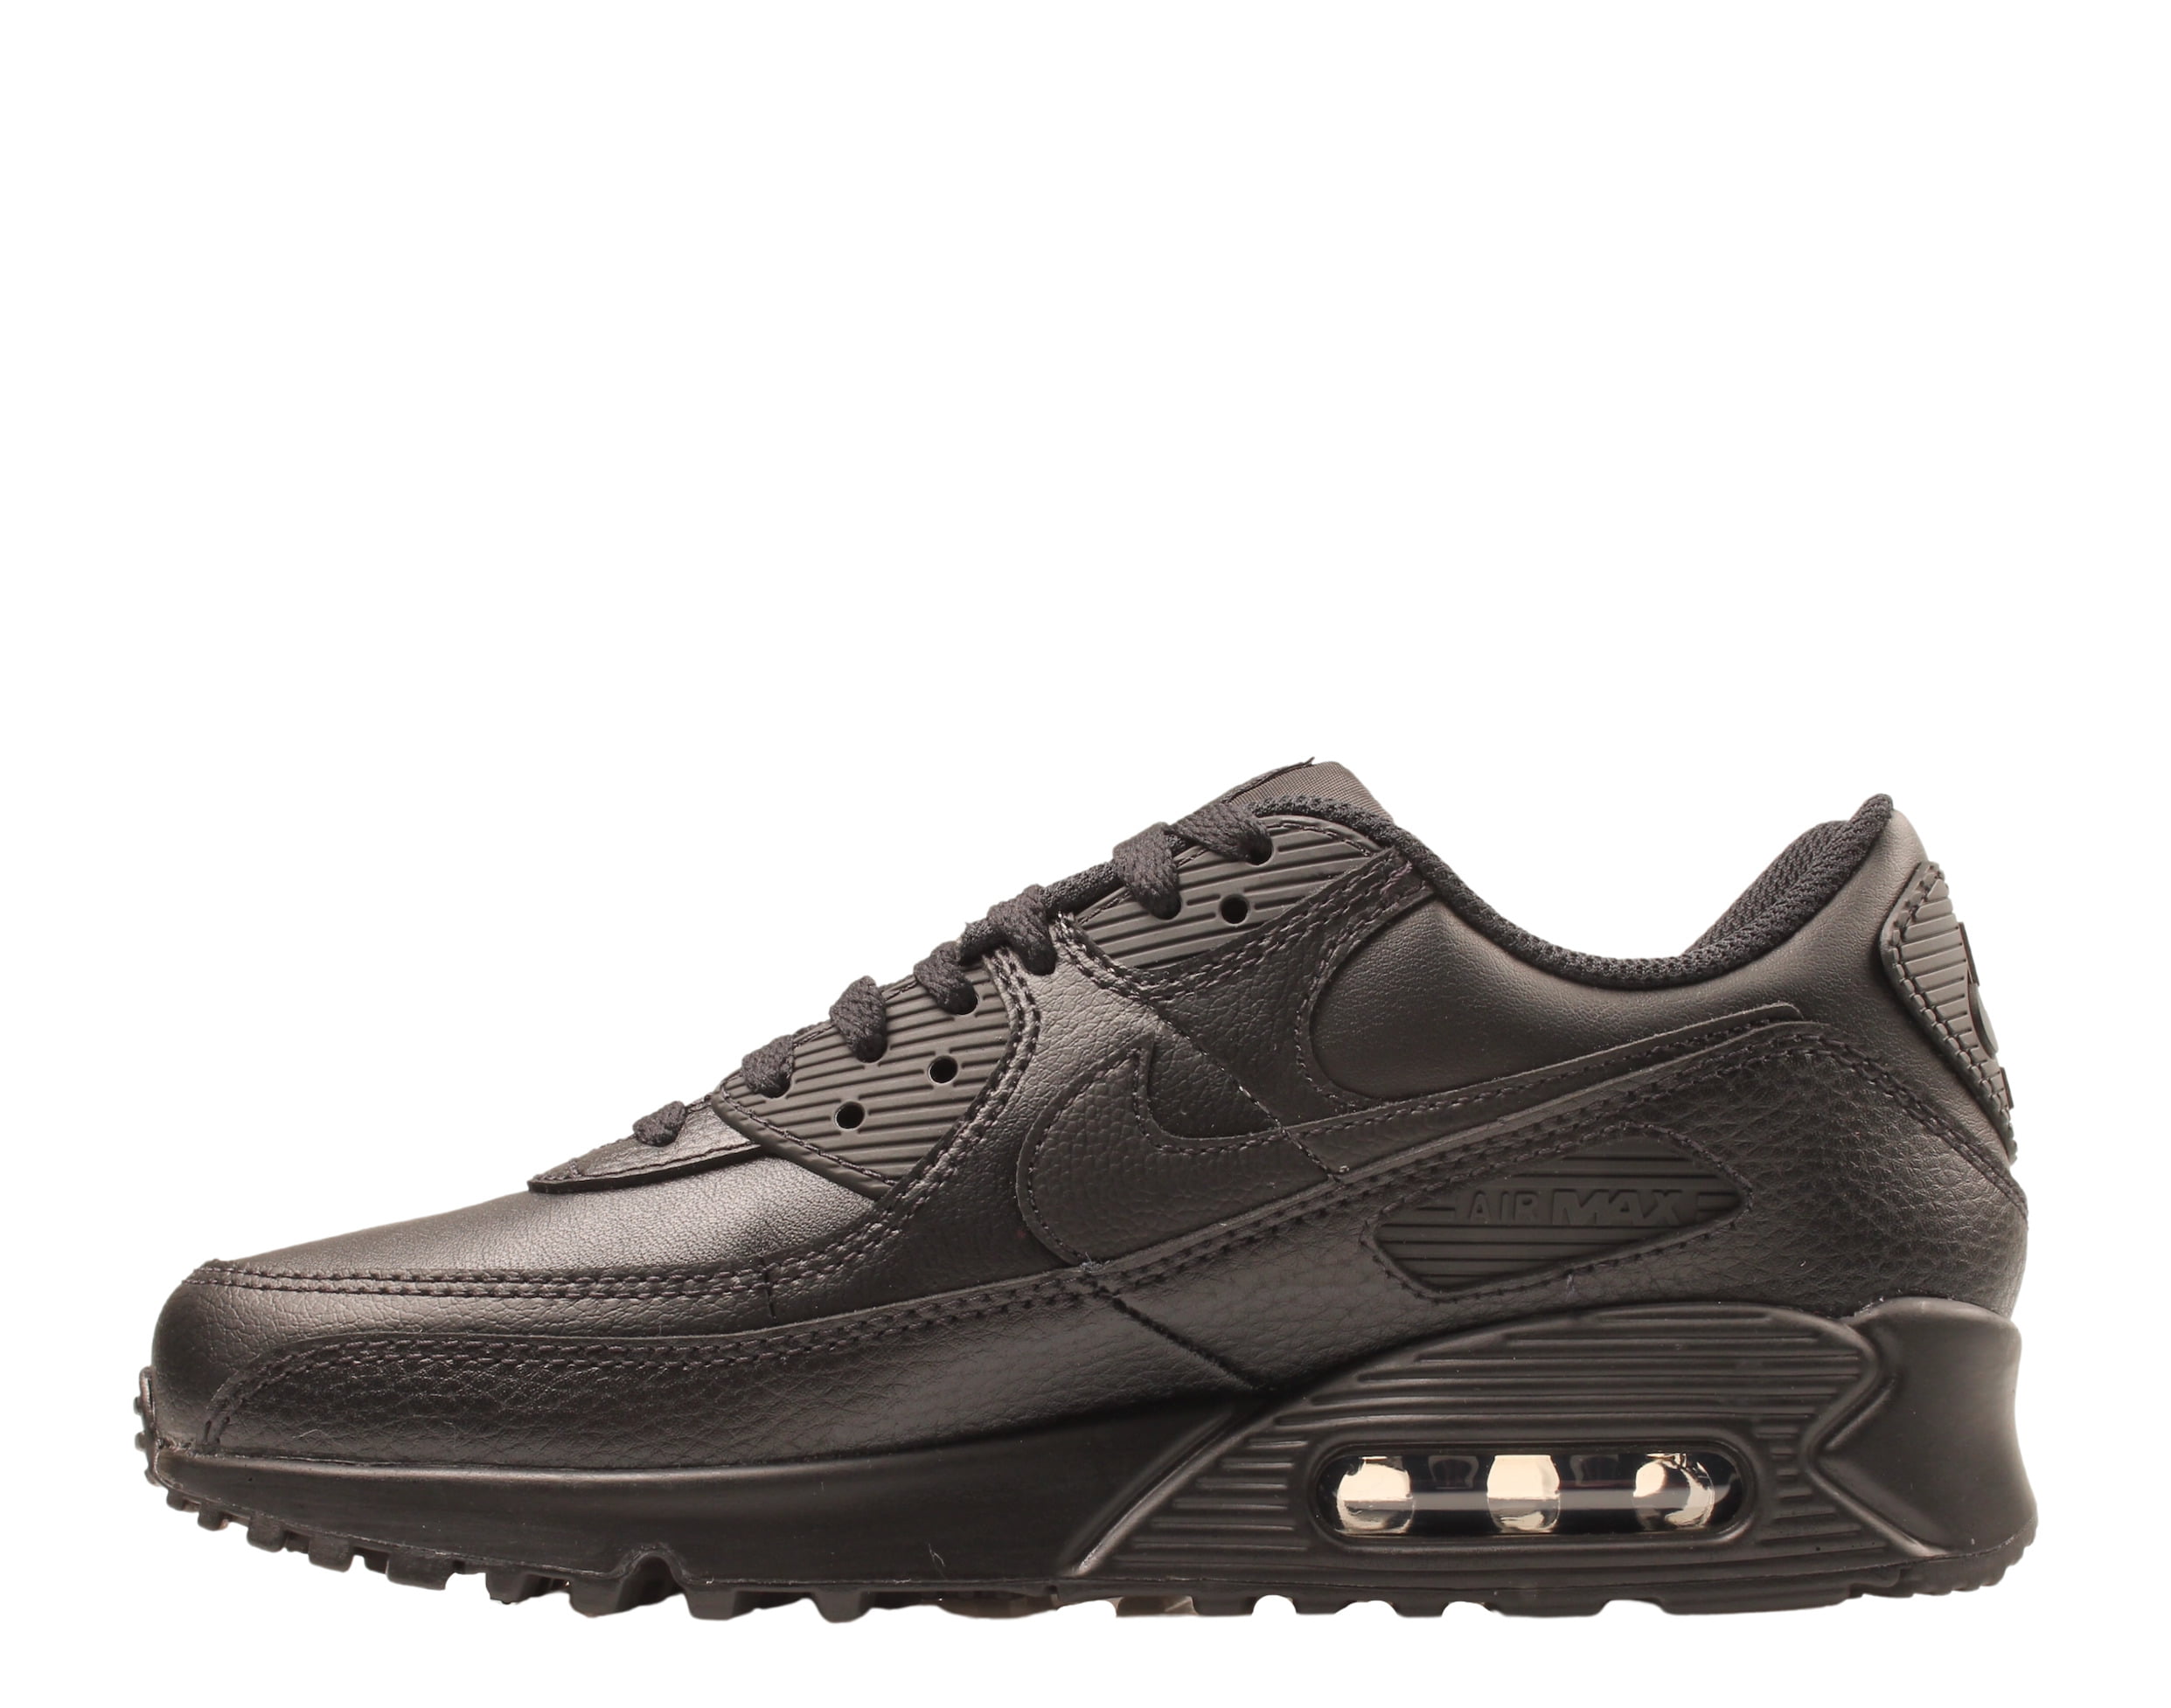 Proberen Bereid academisch Nike Air Max 90 Leather Men's Running Shoes Size 8.5 - Walmart.com